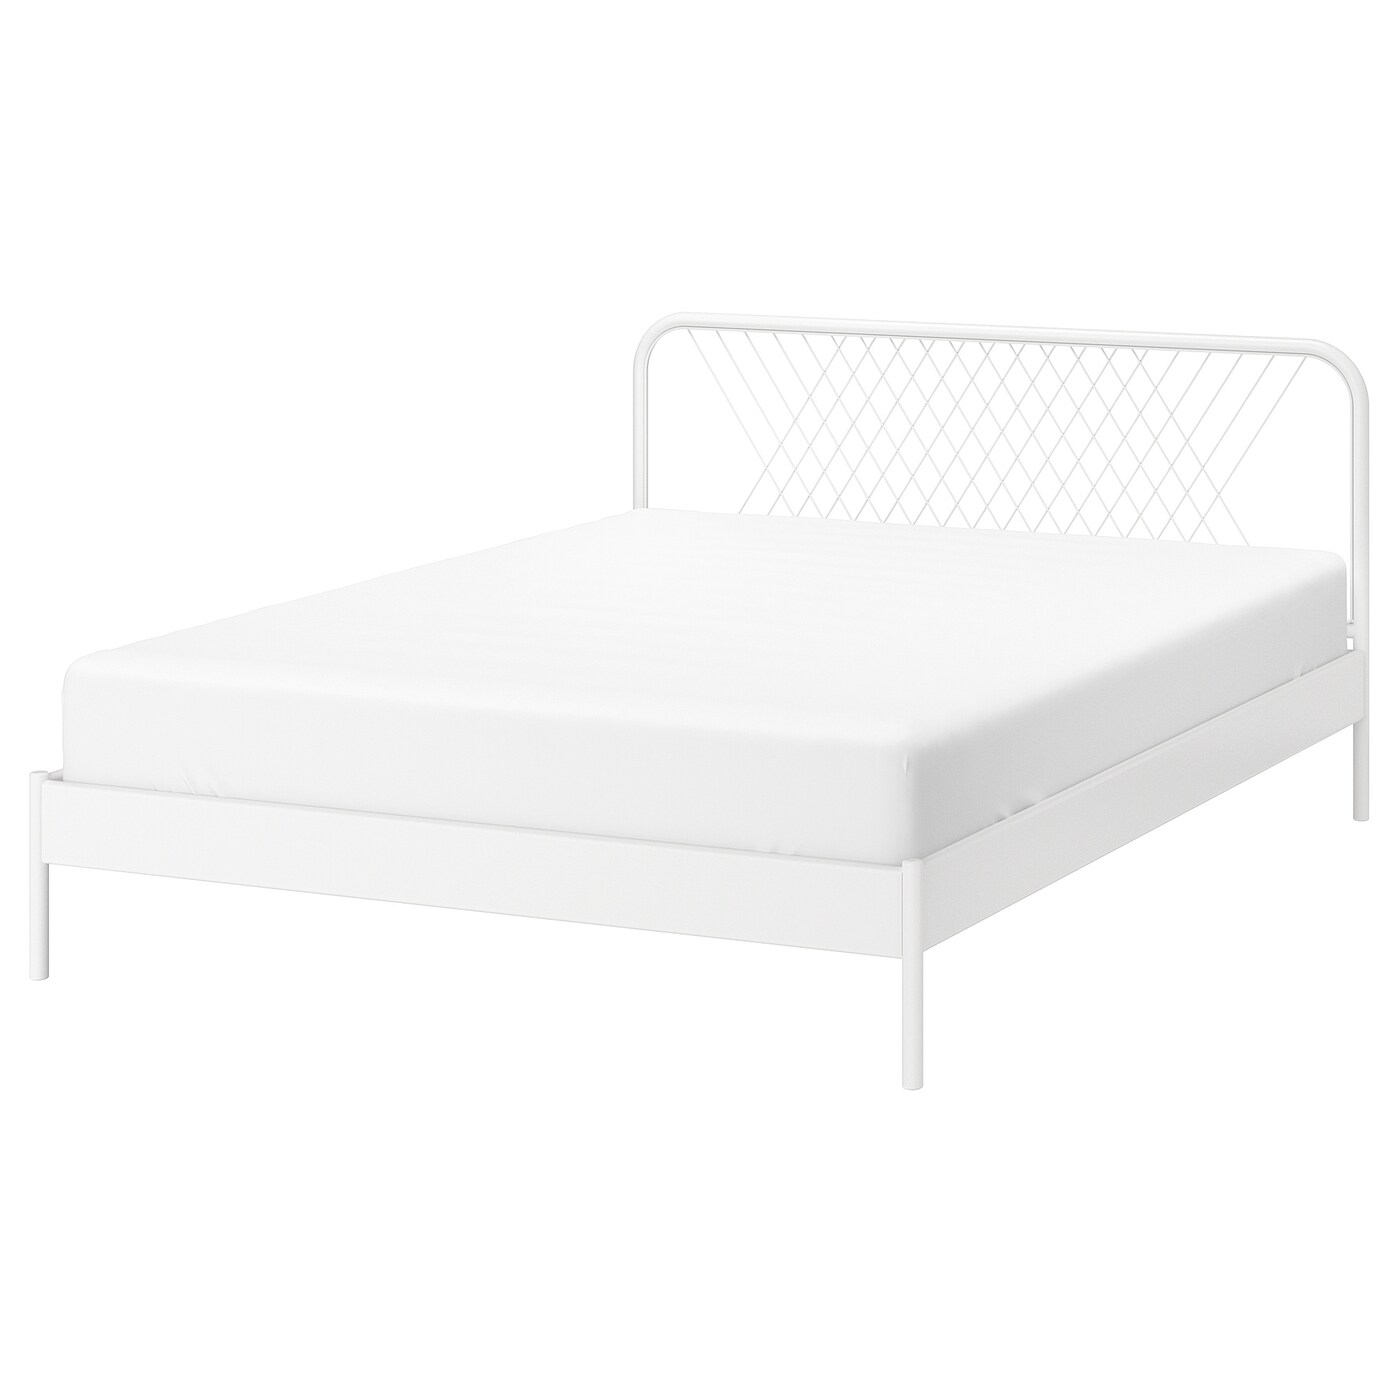 Каркас кровати - IKEA NESTTUN/LINDBÅDEN/LINDBADEN, 200х160 см, белый, НЕСТТУН/ЛИНДБАДЕН ИКЕА